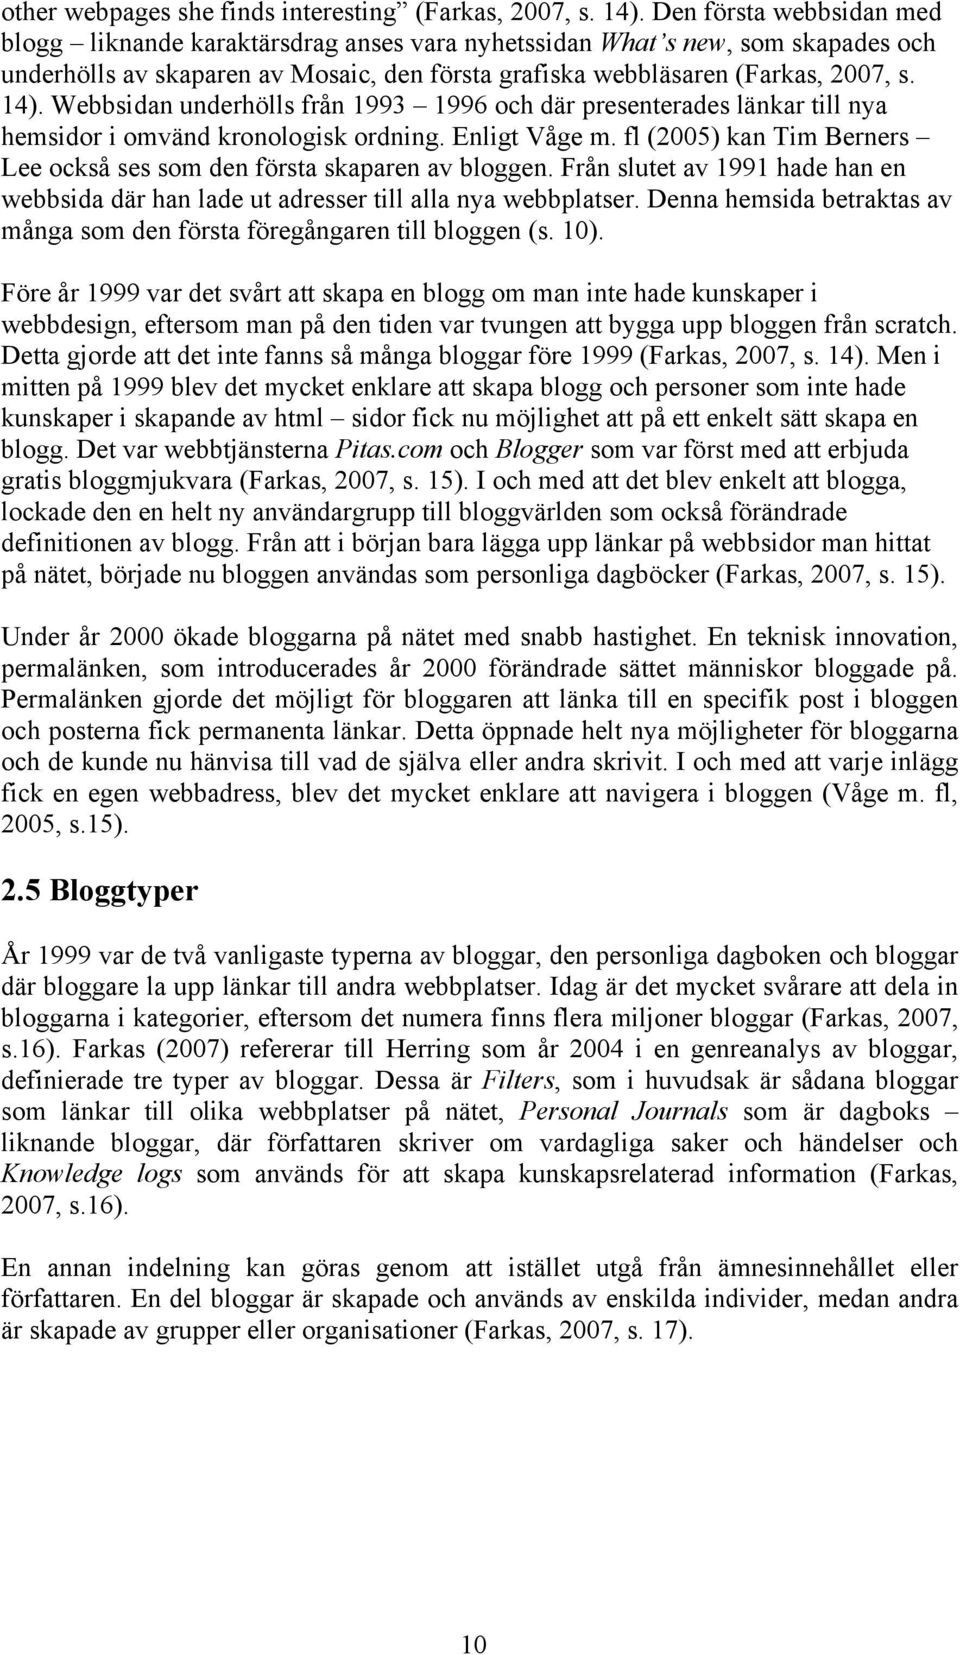 Webbsidan underhölls från 1993 1996 och där presenterades länkar till nya hemsidor i omvänd kronologisk ordning. Enligt Våge m.